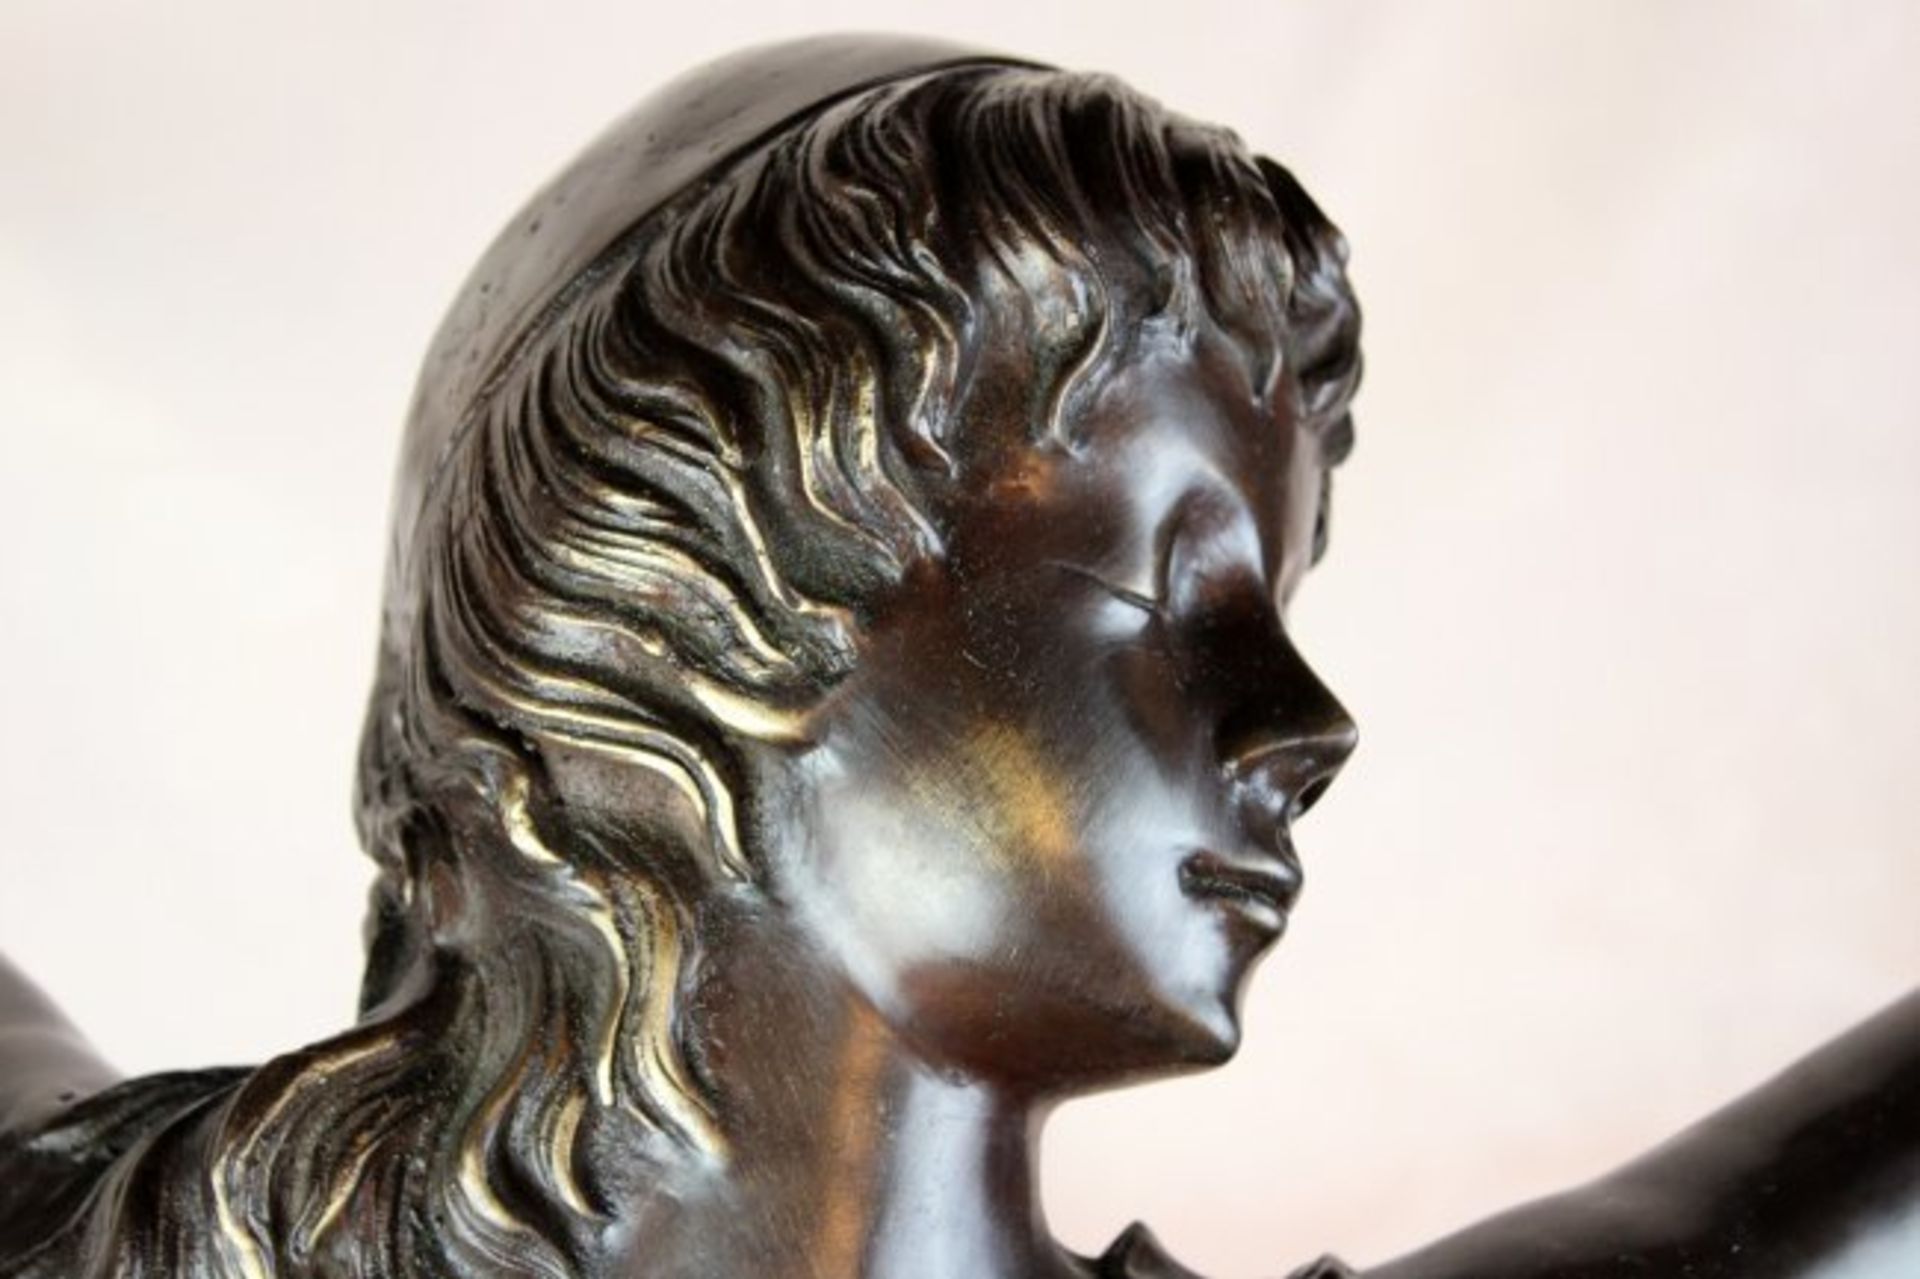 Bronze sculpture "Ballerina" - Image 3 of 3